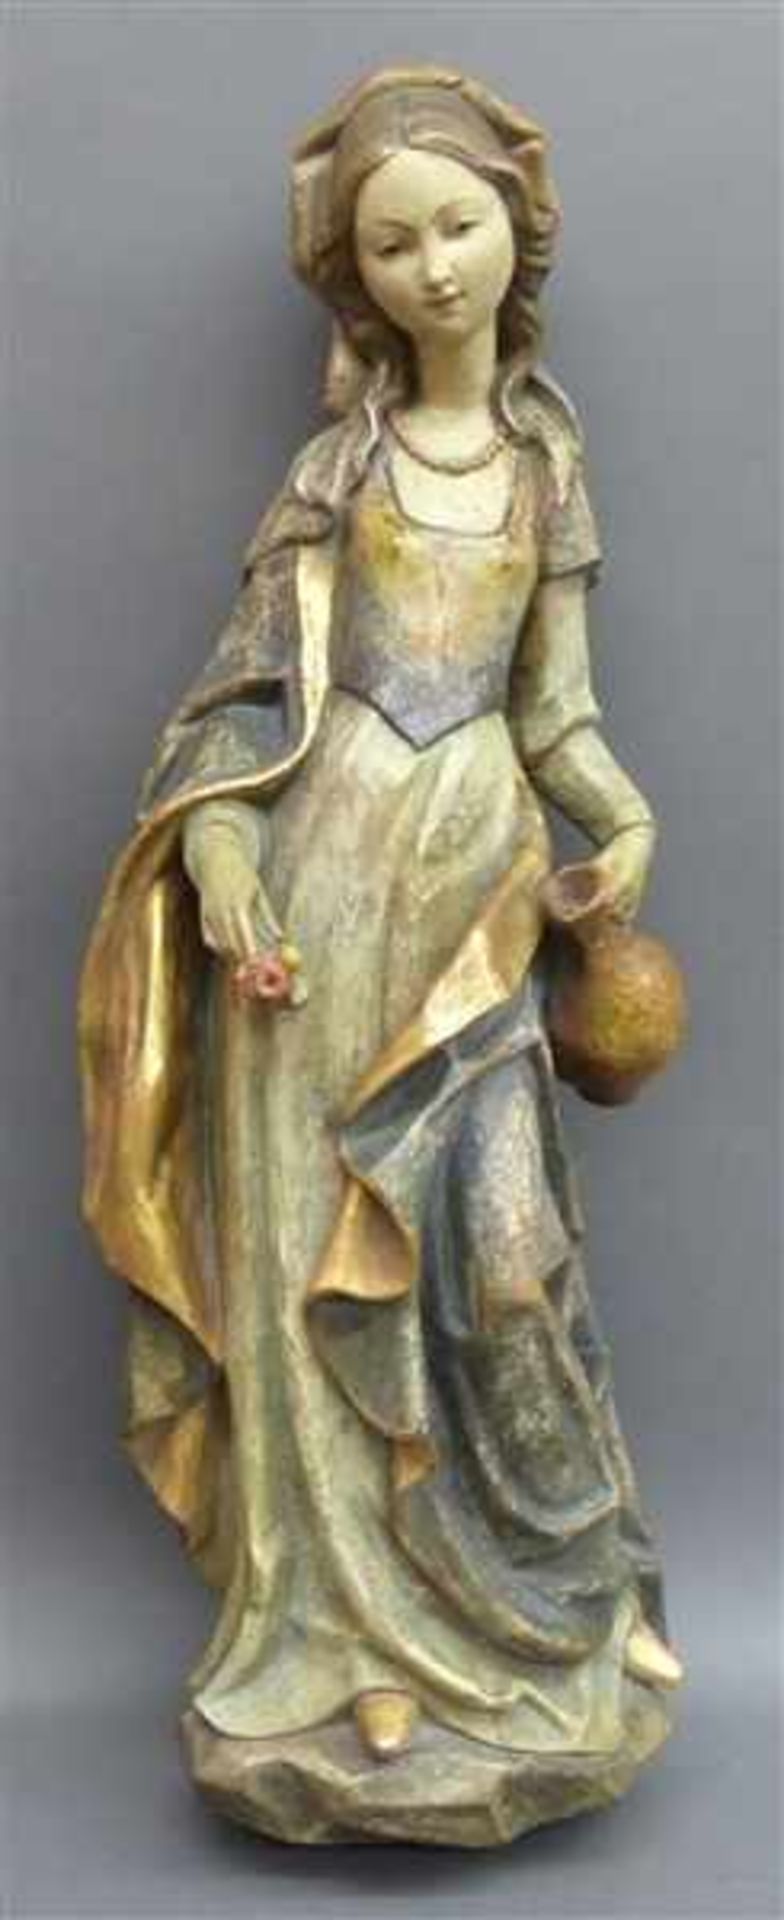 Holzschnitzarbeitgefasst und teilvergoldet, "Heilige Elisabeth mit Krug und Rose", signiert Zenz